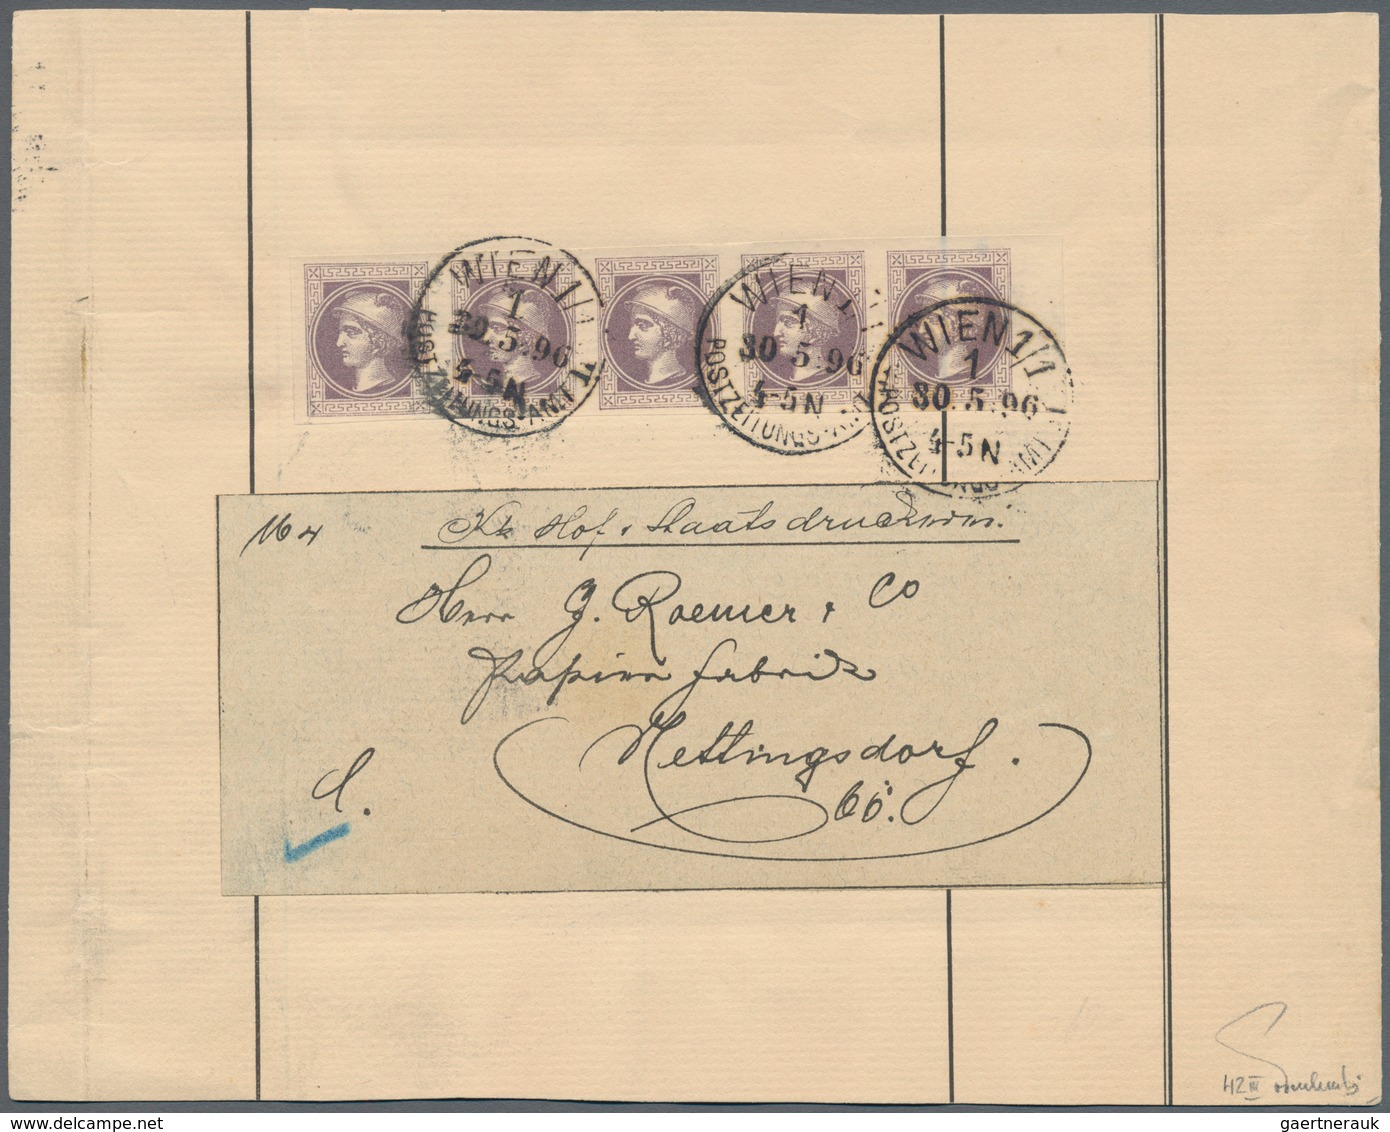 Österreich: 1867, (1 Kr) Merkurkopf Zeitungsmarke, Partie mit 4 verschiedenen Einzelfrankaturen auf